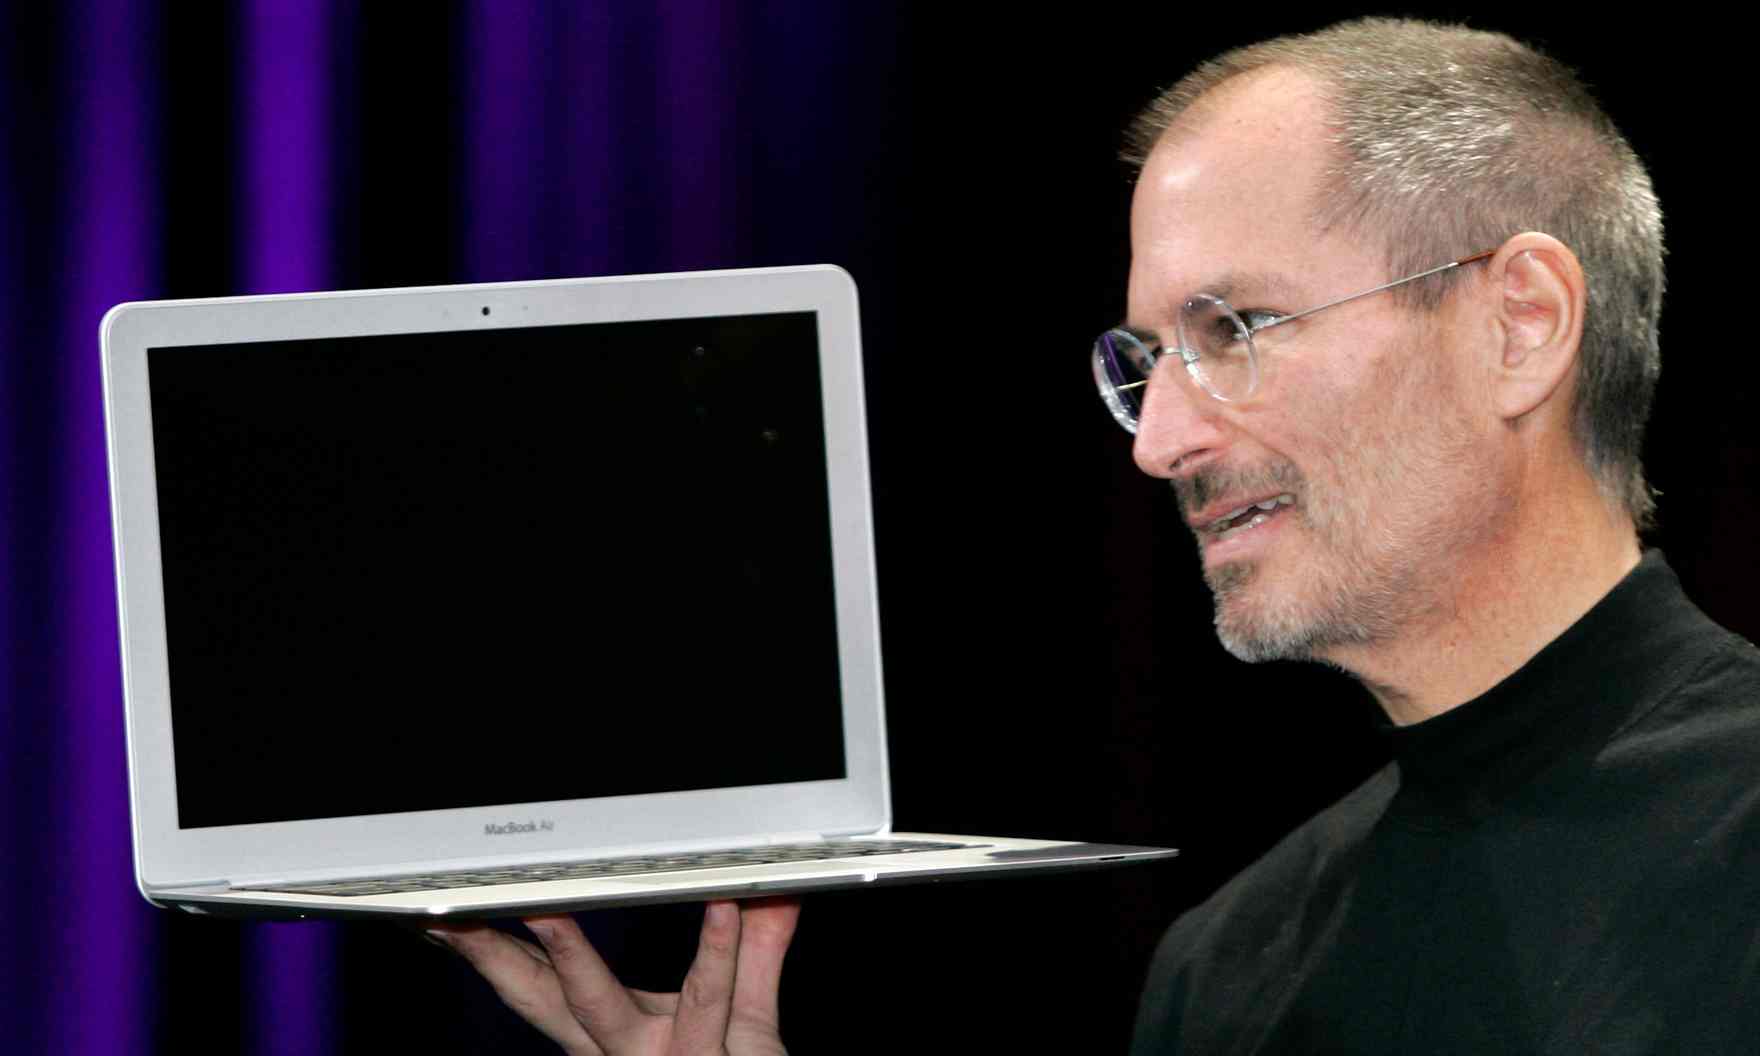 MacBook Air, 2008